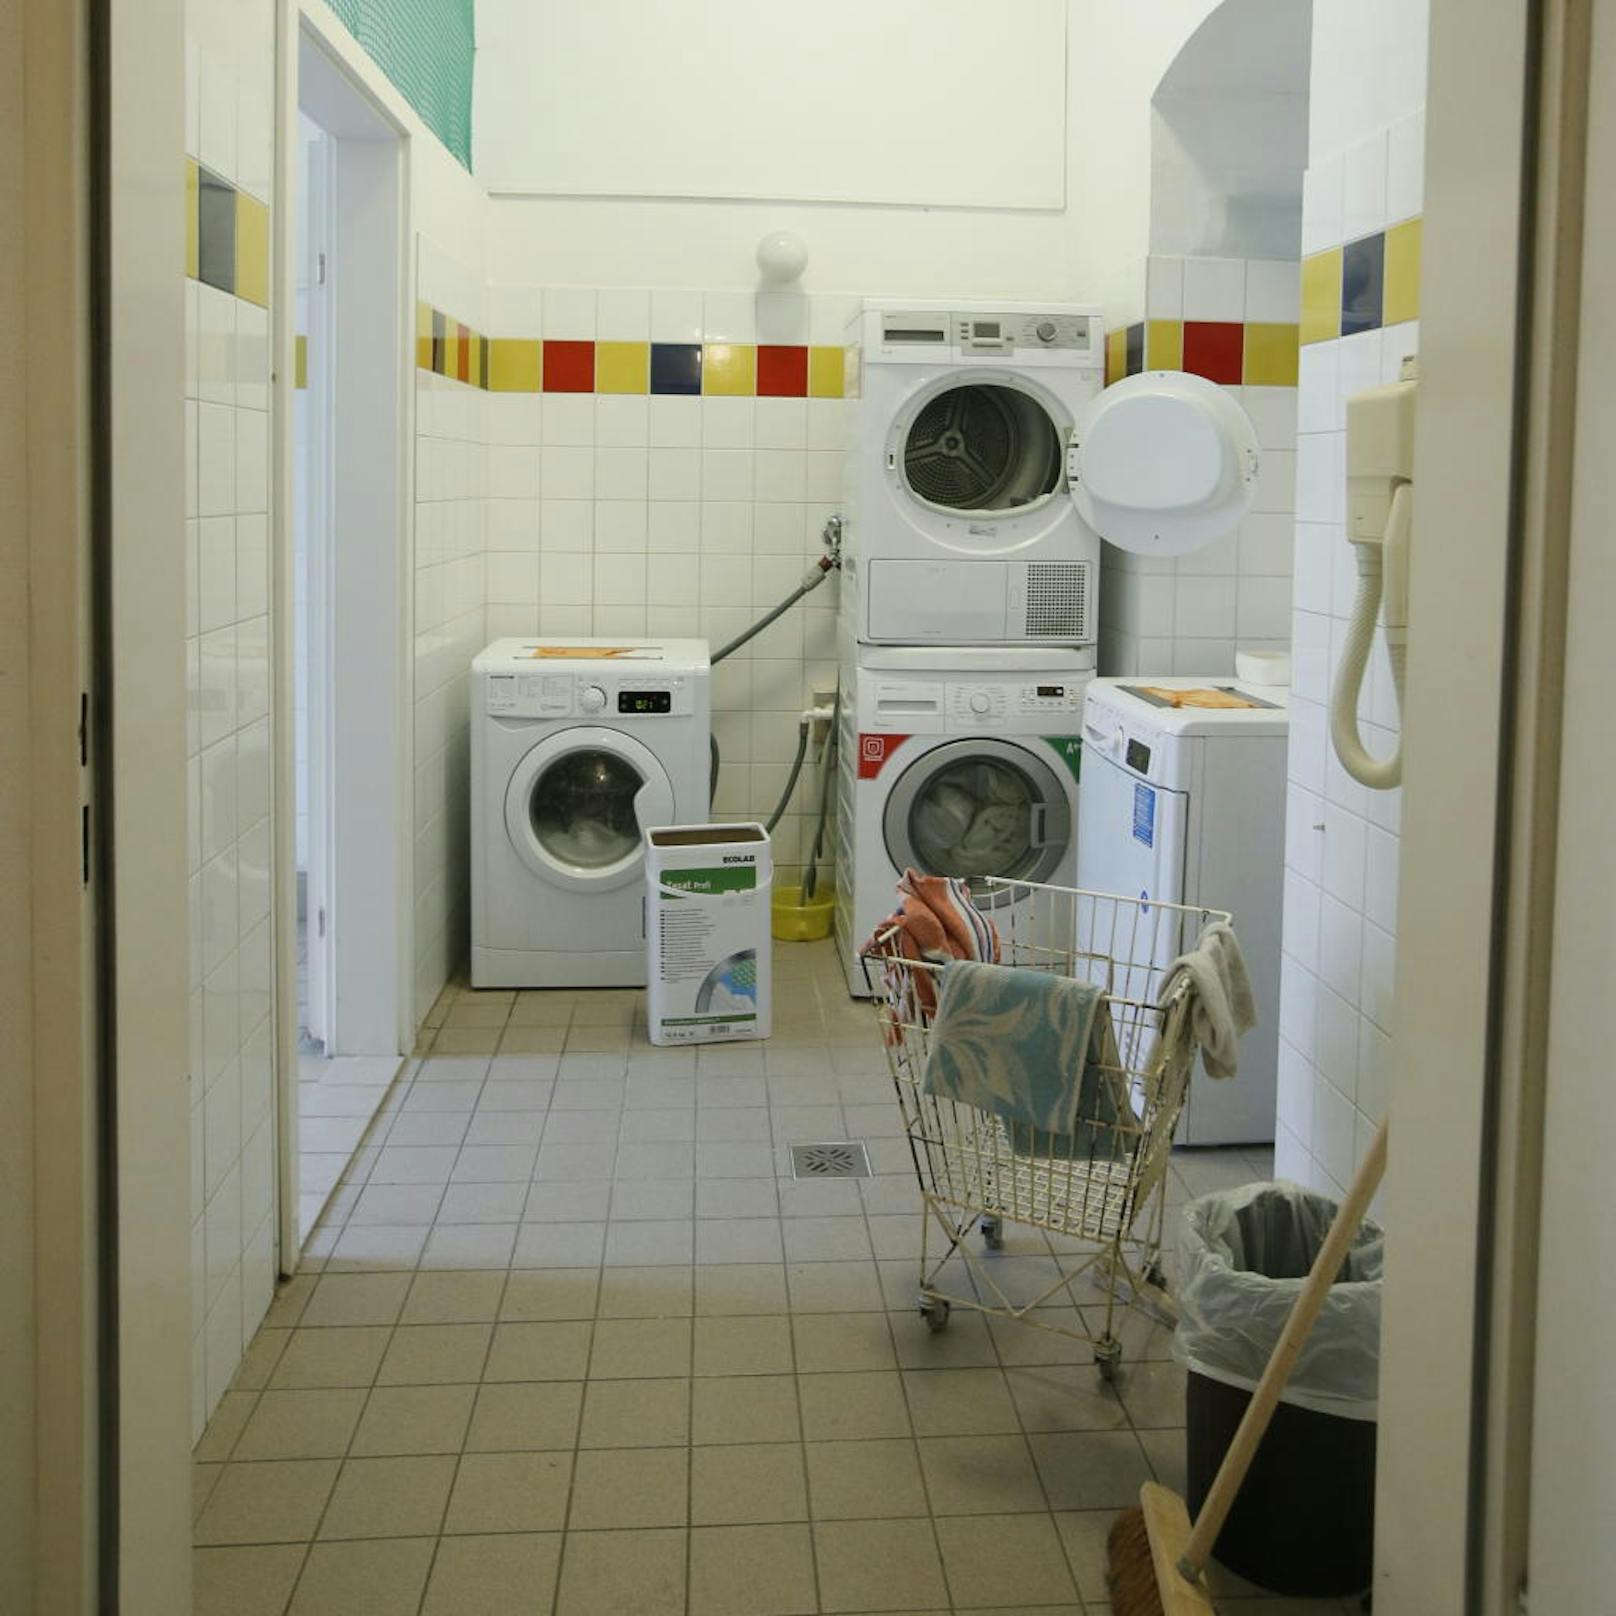 In den Wärmestuben gibt es auch die Möglichkeit zum Wäsche waschen und trocknen.